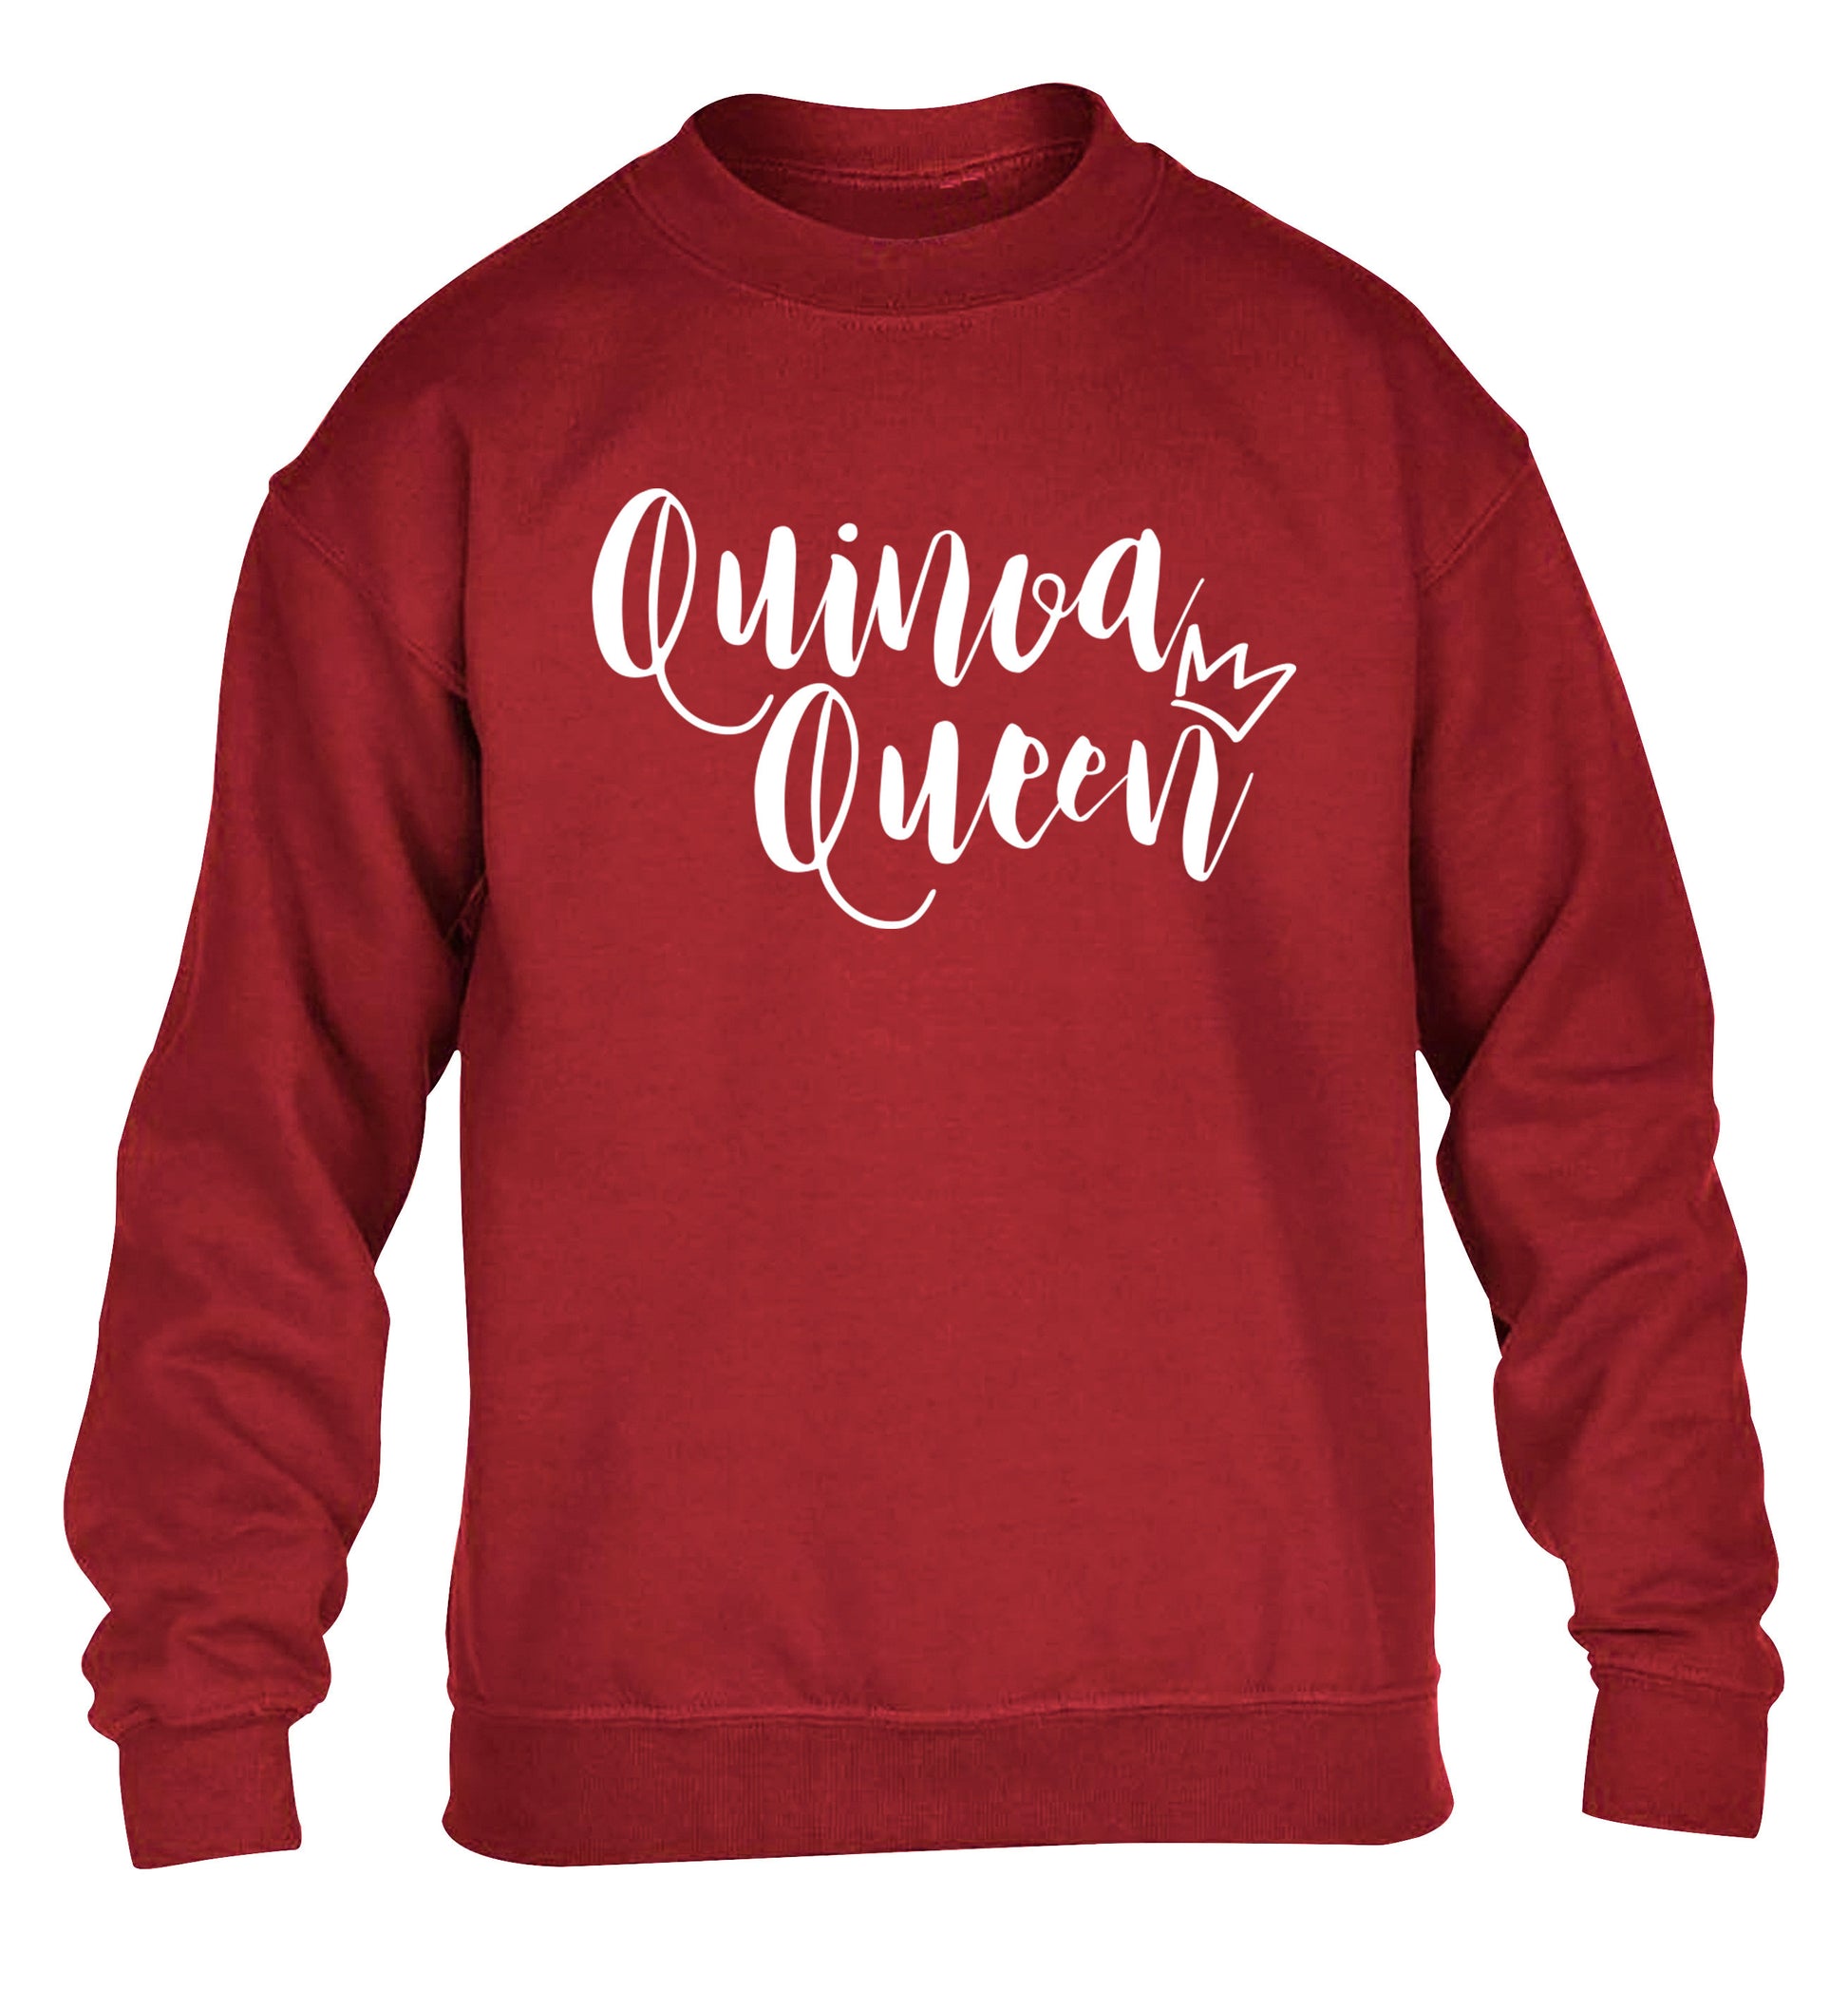 Quinoa Queen children's grey  sweater 12-14 Years